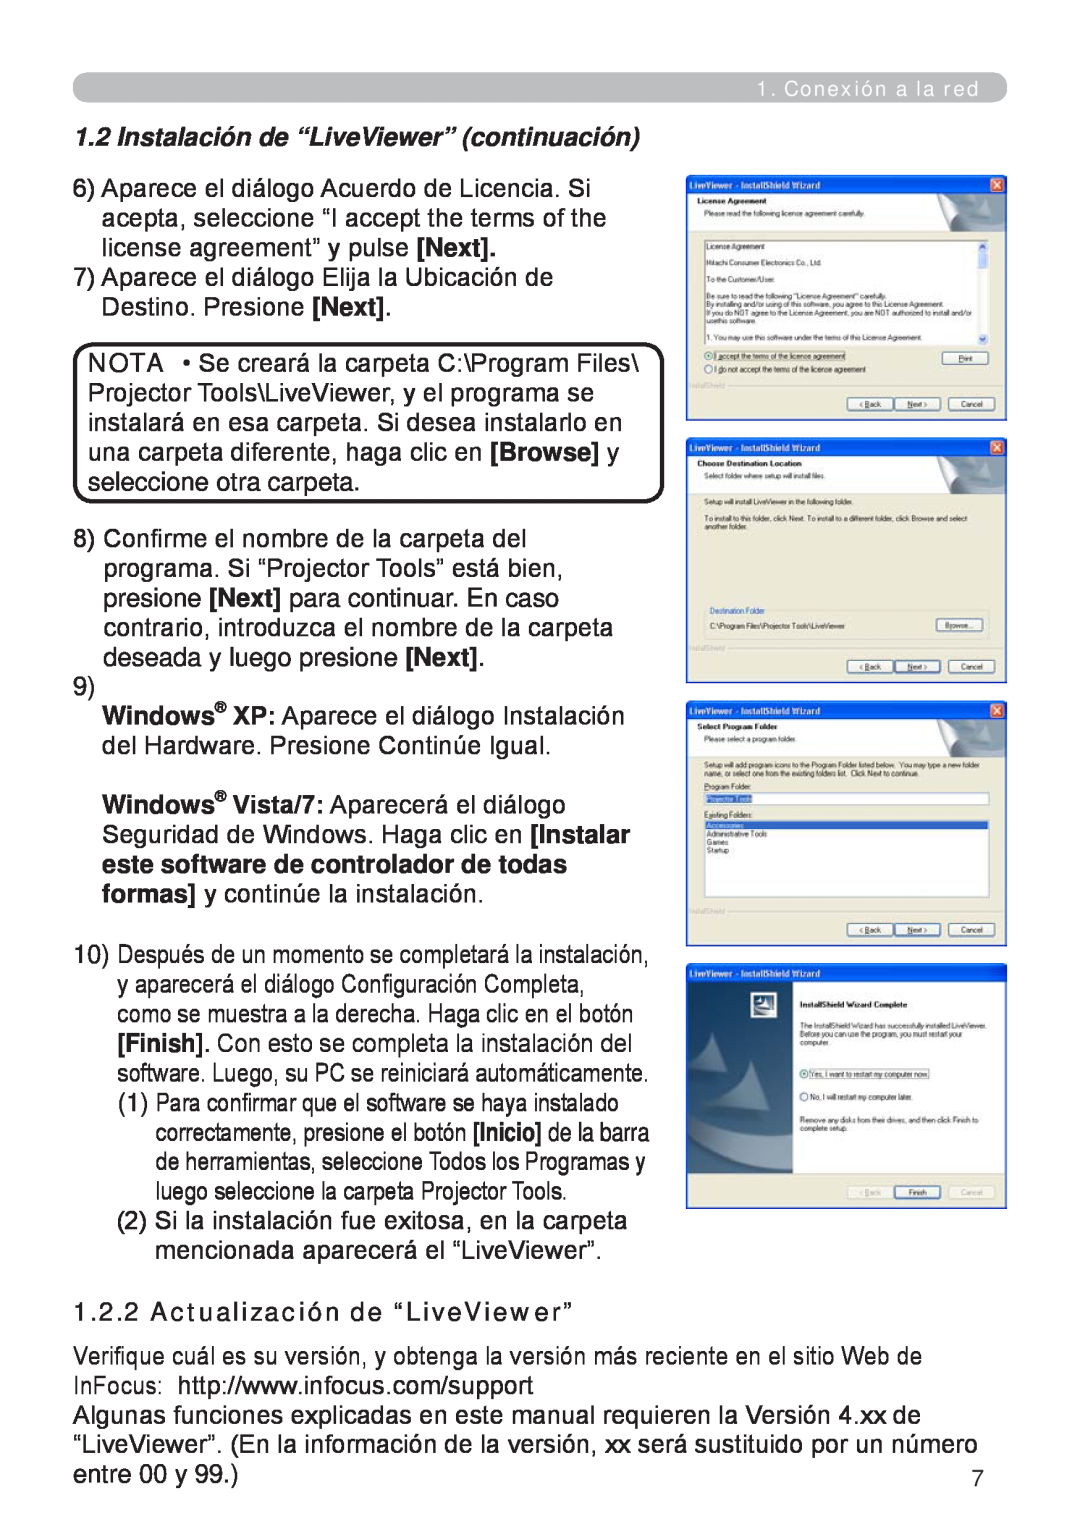 InFocus W60, W61 manual Instalación de “LiveViewer” continuación, Actualización de “LiveViewer” 